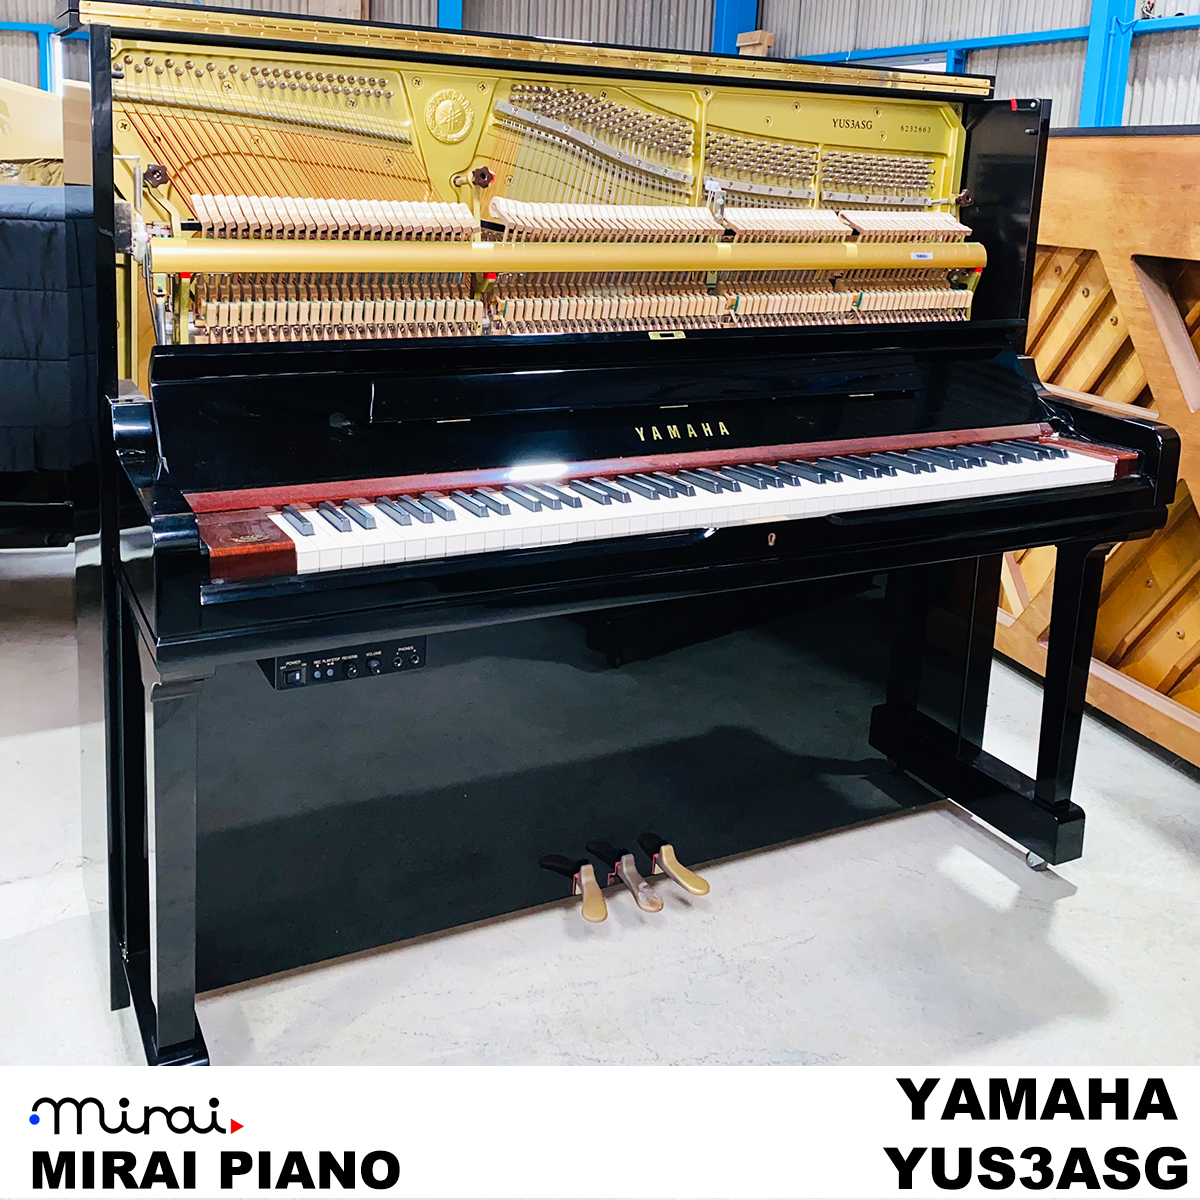 ヤマハ設立120周年を記念した、限定ピアノYUS3ASG 120th Anniversaryの 